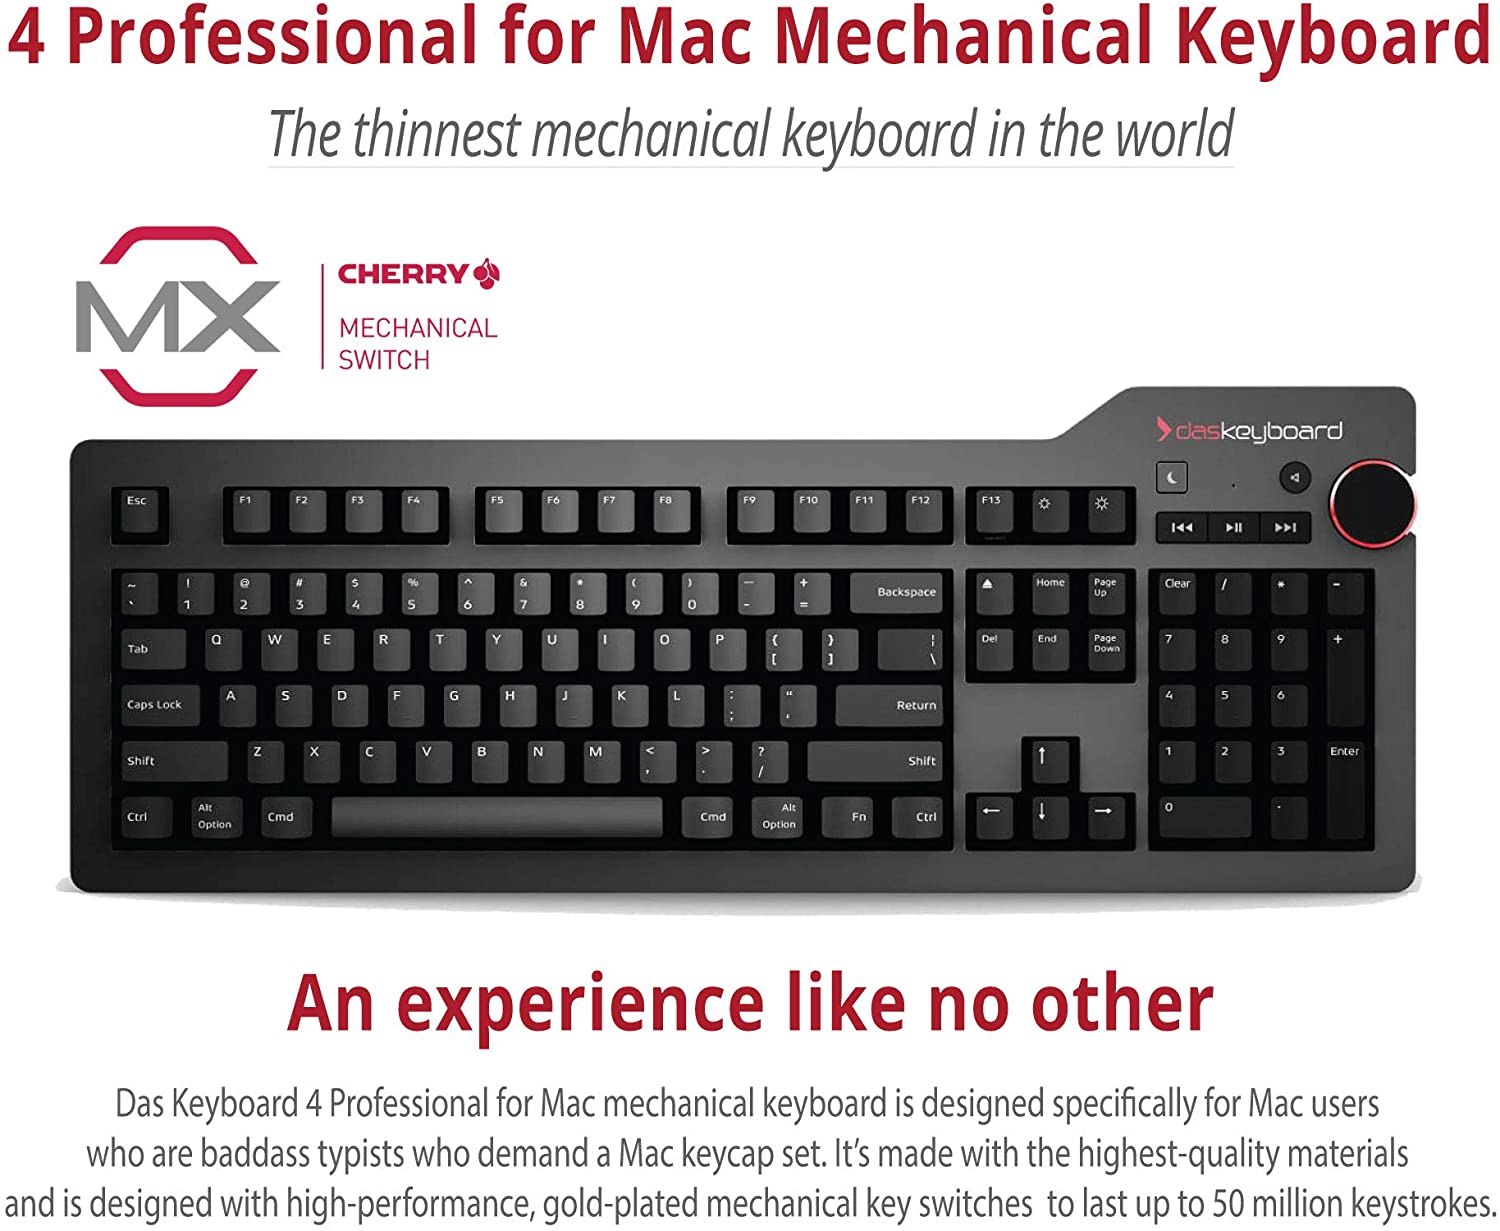 program command key on das keyboard for mac